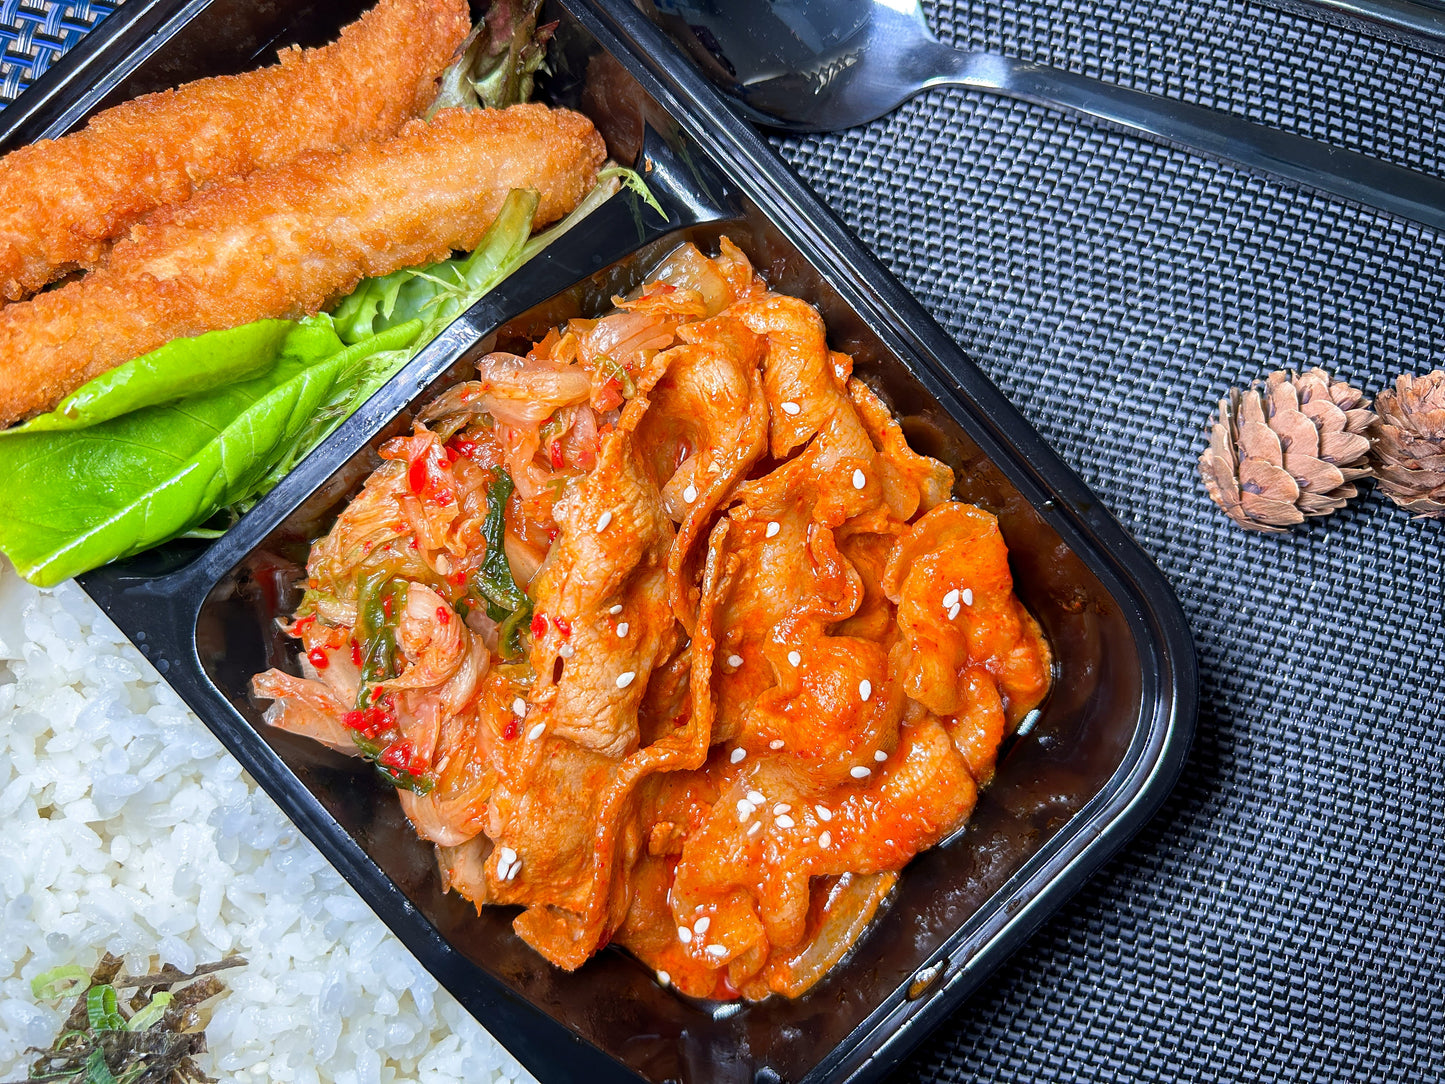 韓流泡菜豬腩肉珍珠飯配孜然雞條 | 便當飯盒到會